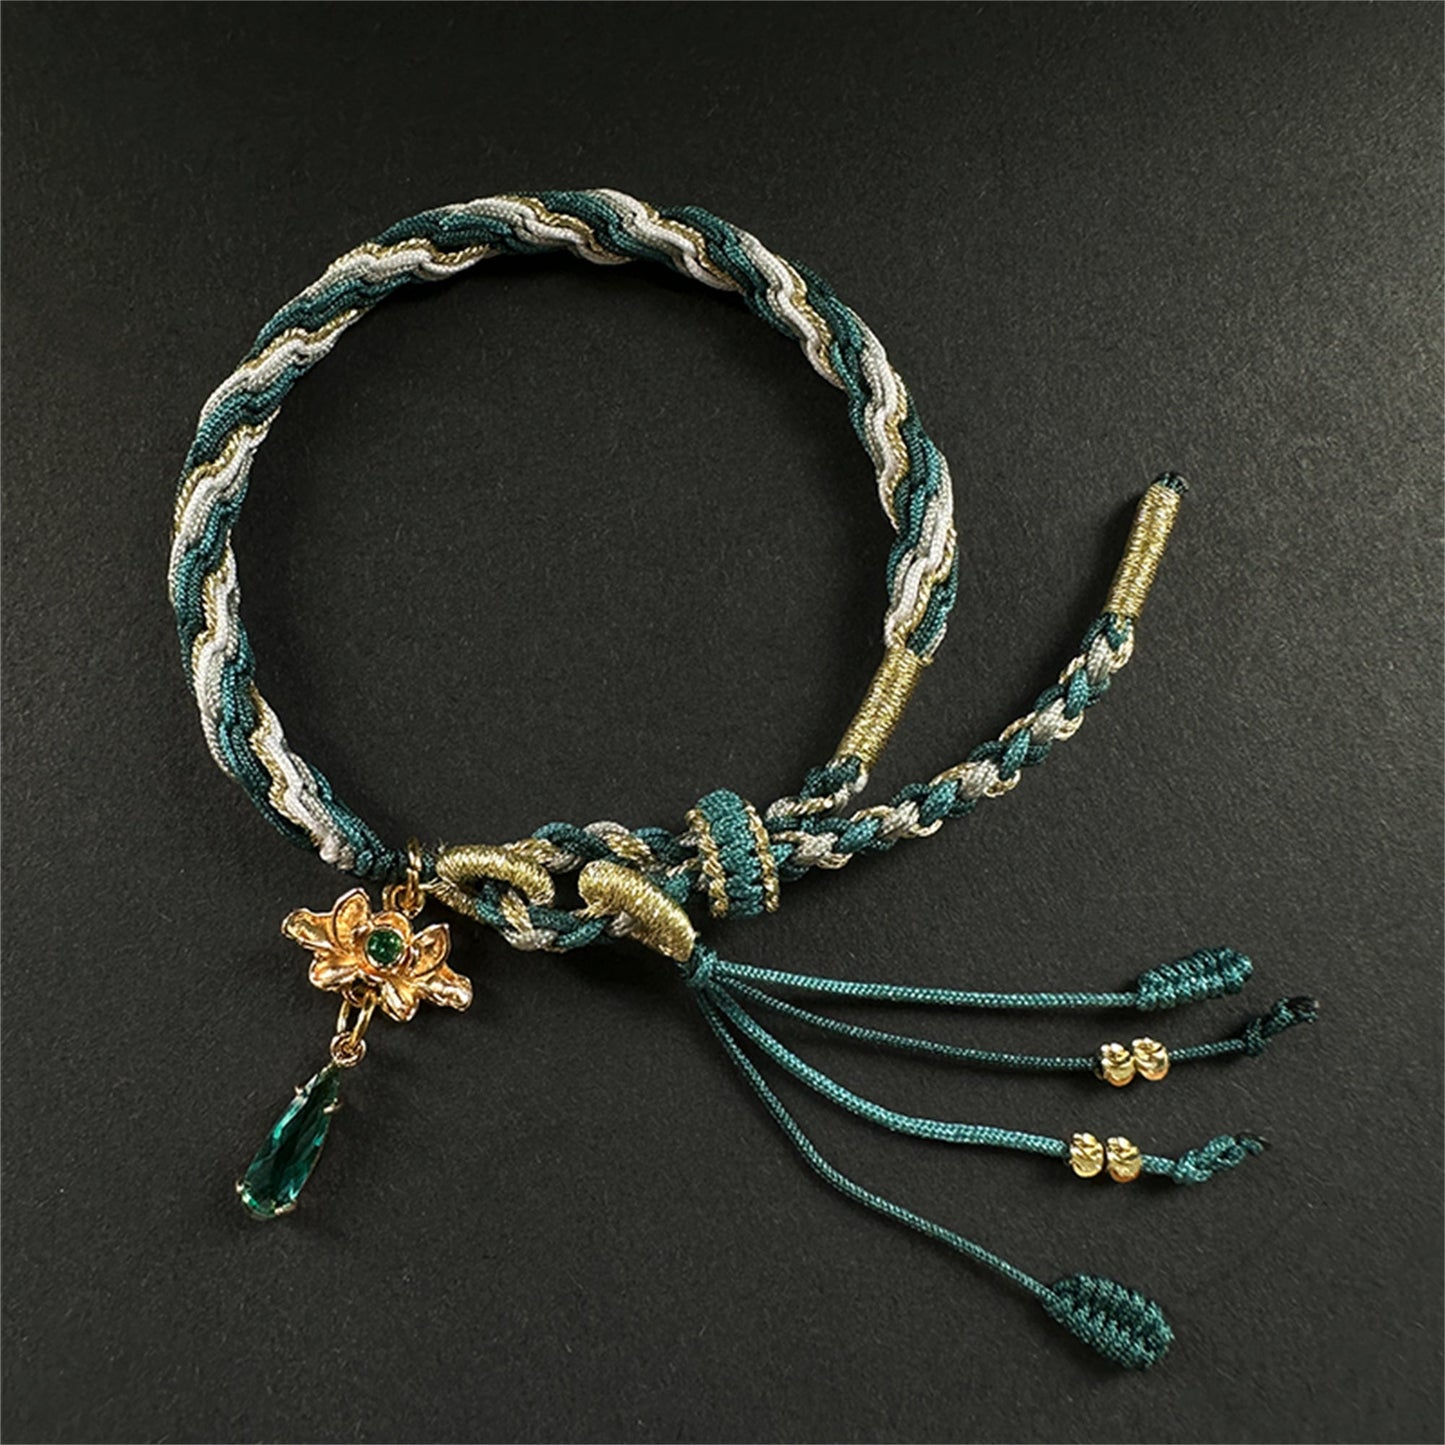 Honkai Star Rail Kafka Bracelet Hand-Woven Bracelet